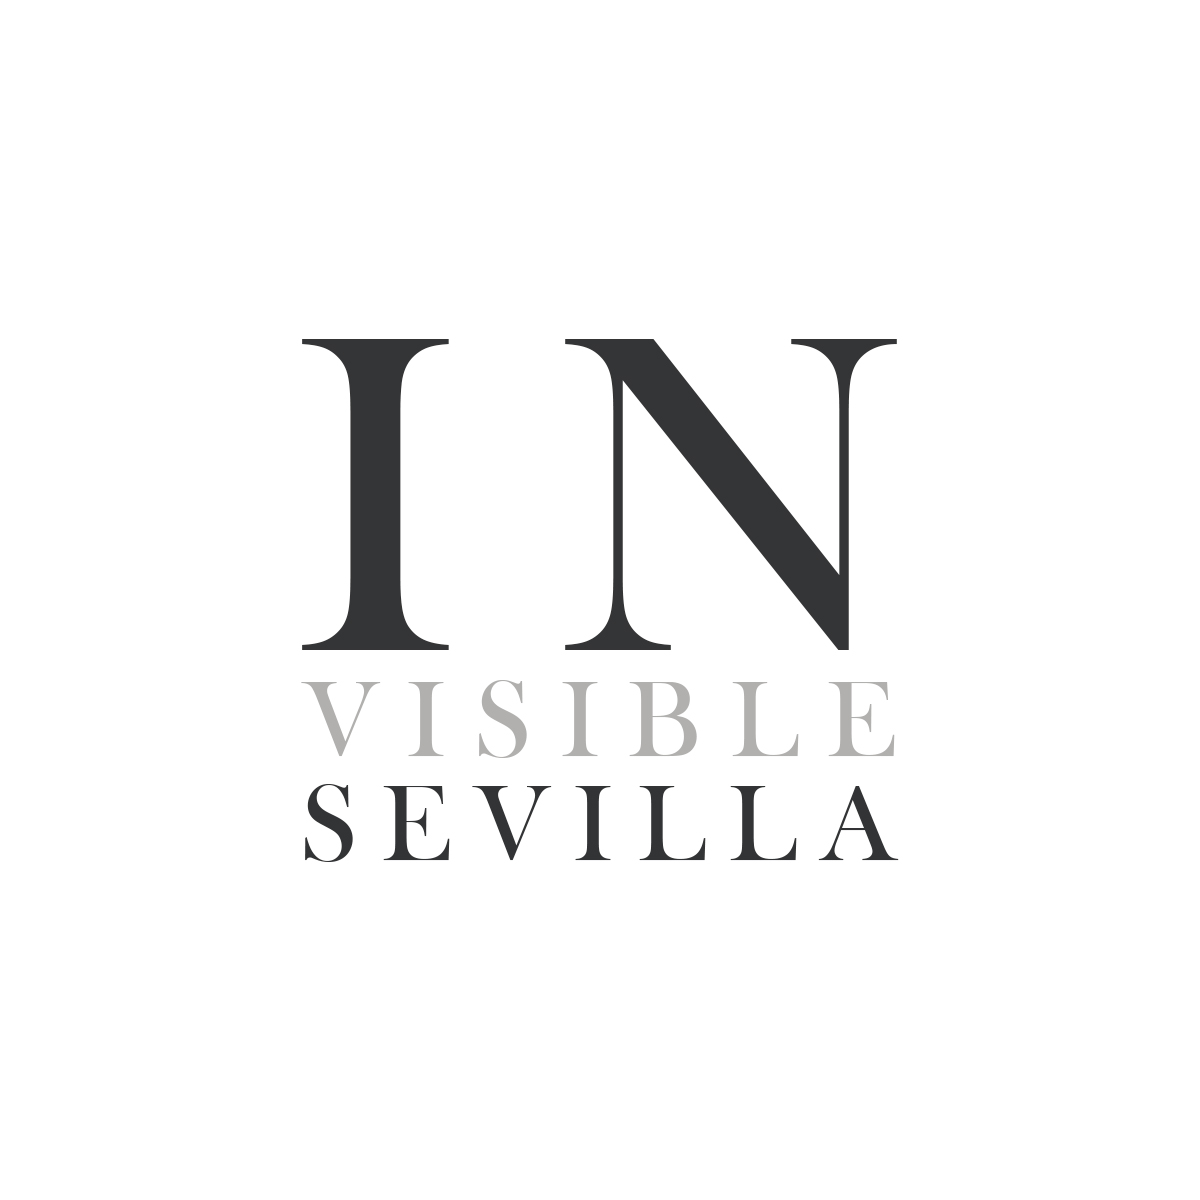 Logotipo Invisible Sevilla